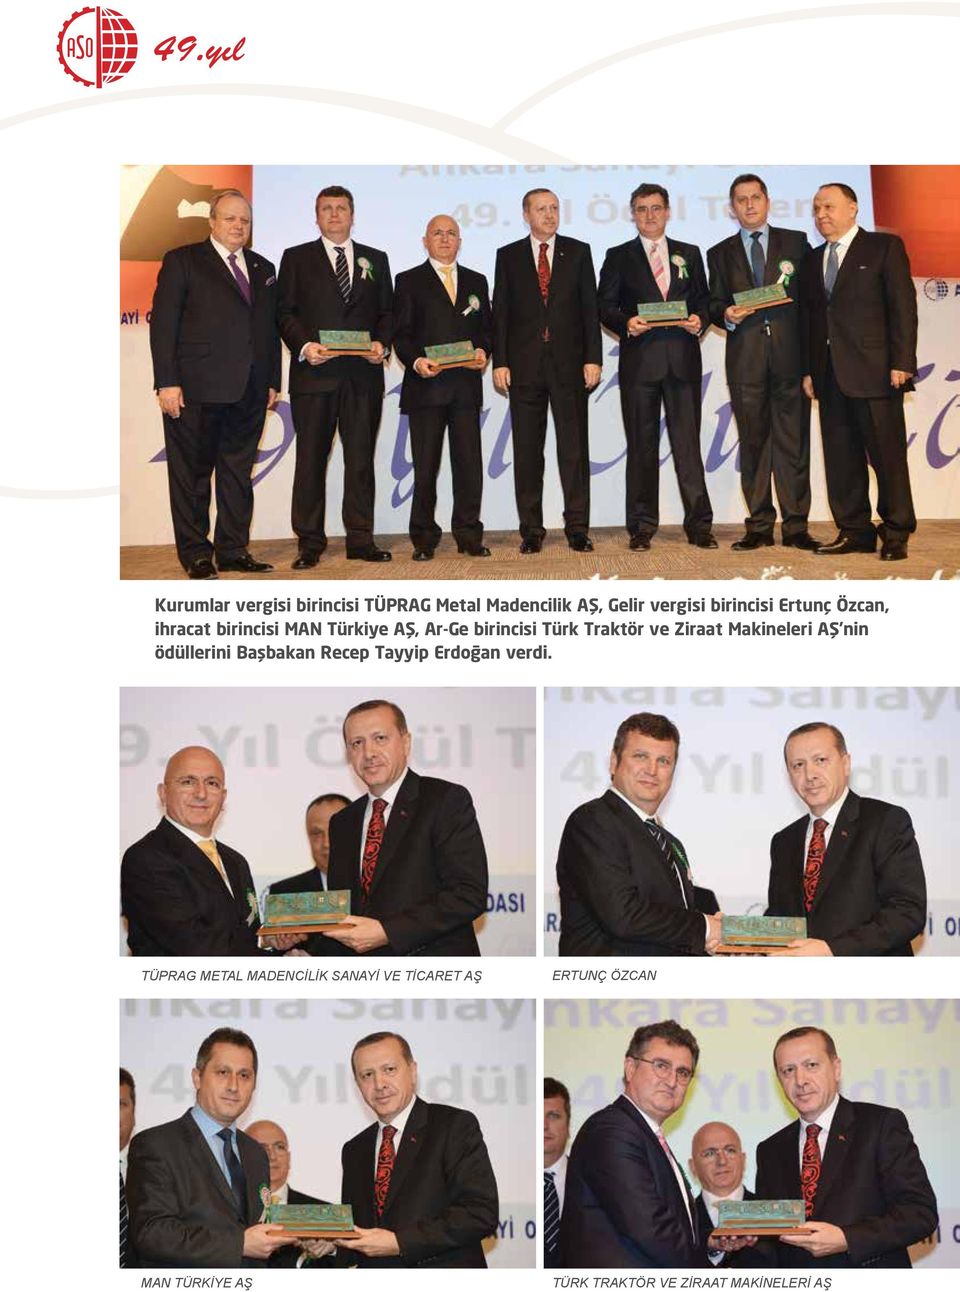 Makineleri AŞ nin ödüllerini Başbakan Recep Tayyip Erdoğan verdi.